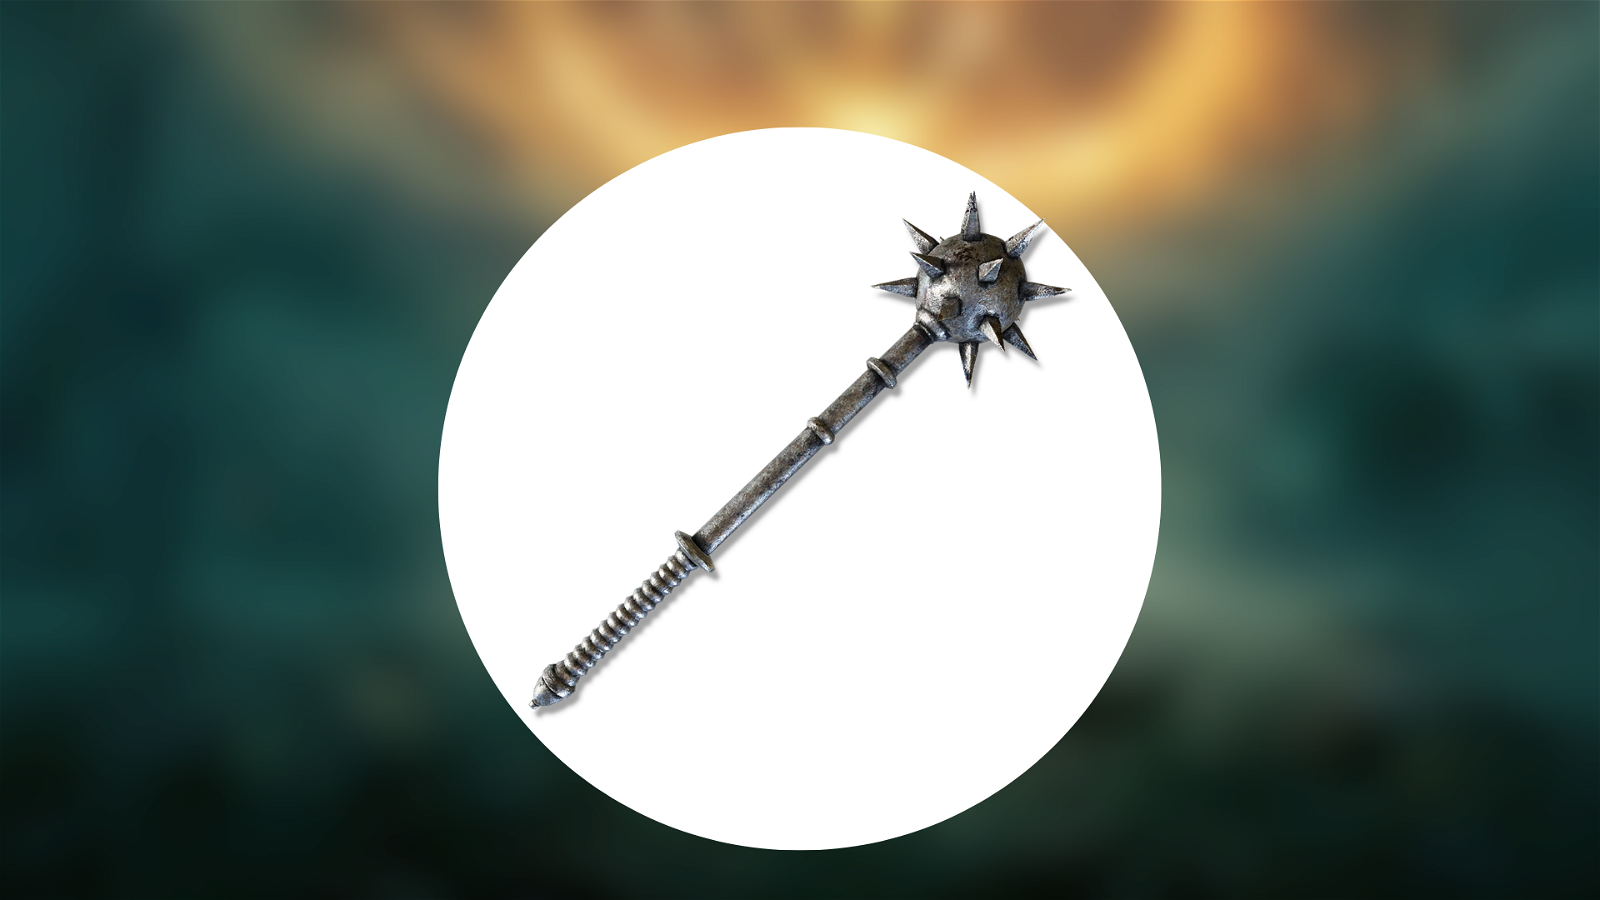 The Morningstar | Weapon in Elden Ring